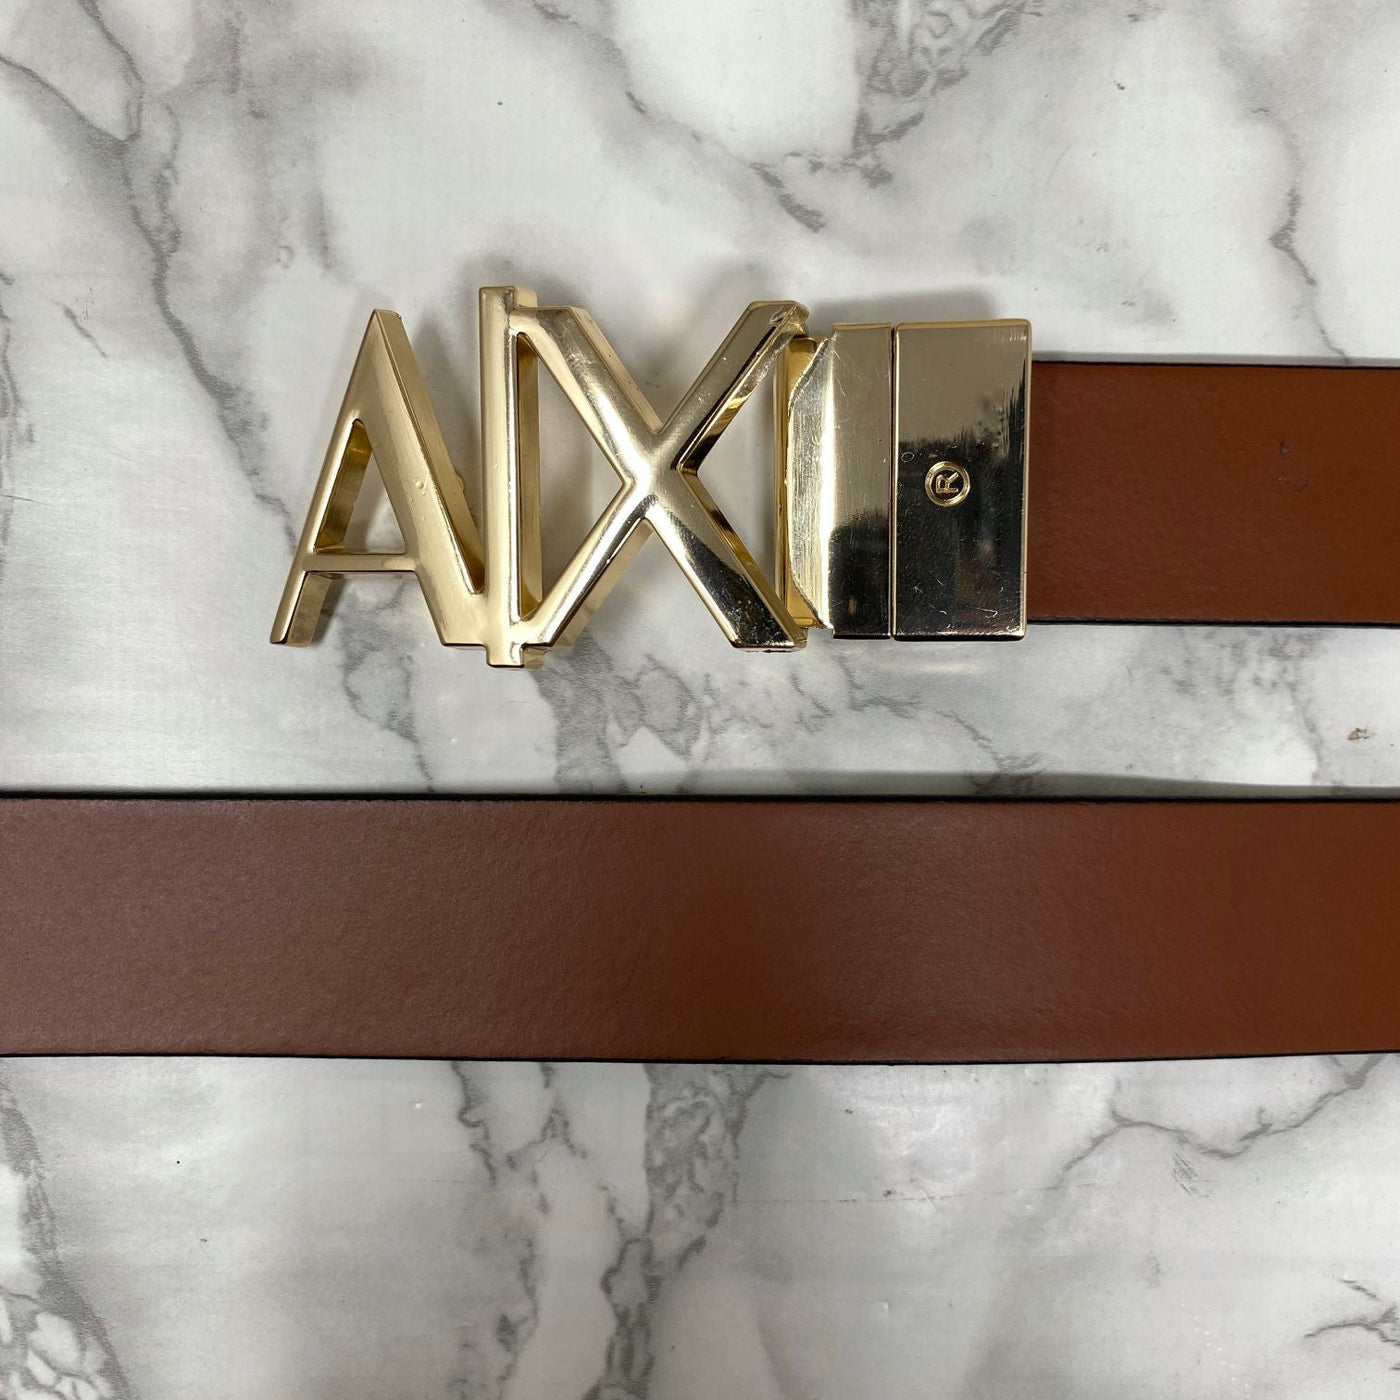 Fashionable AIX Leather Strap Belt -UniqueandClassy